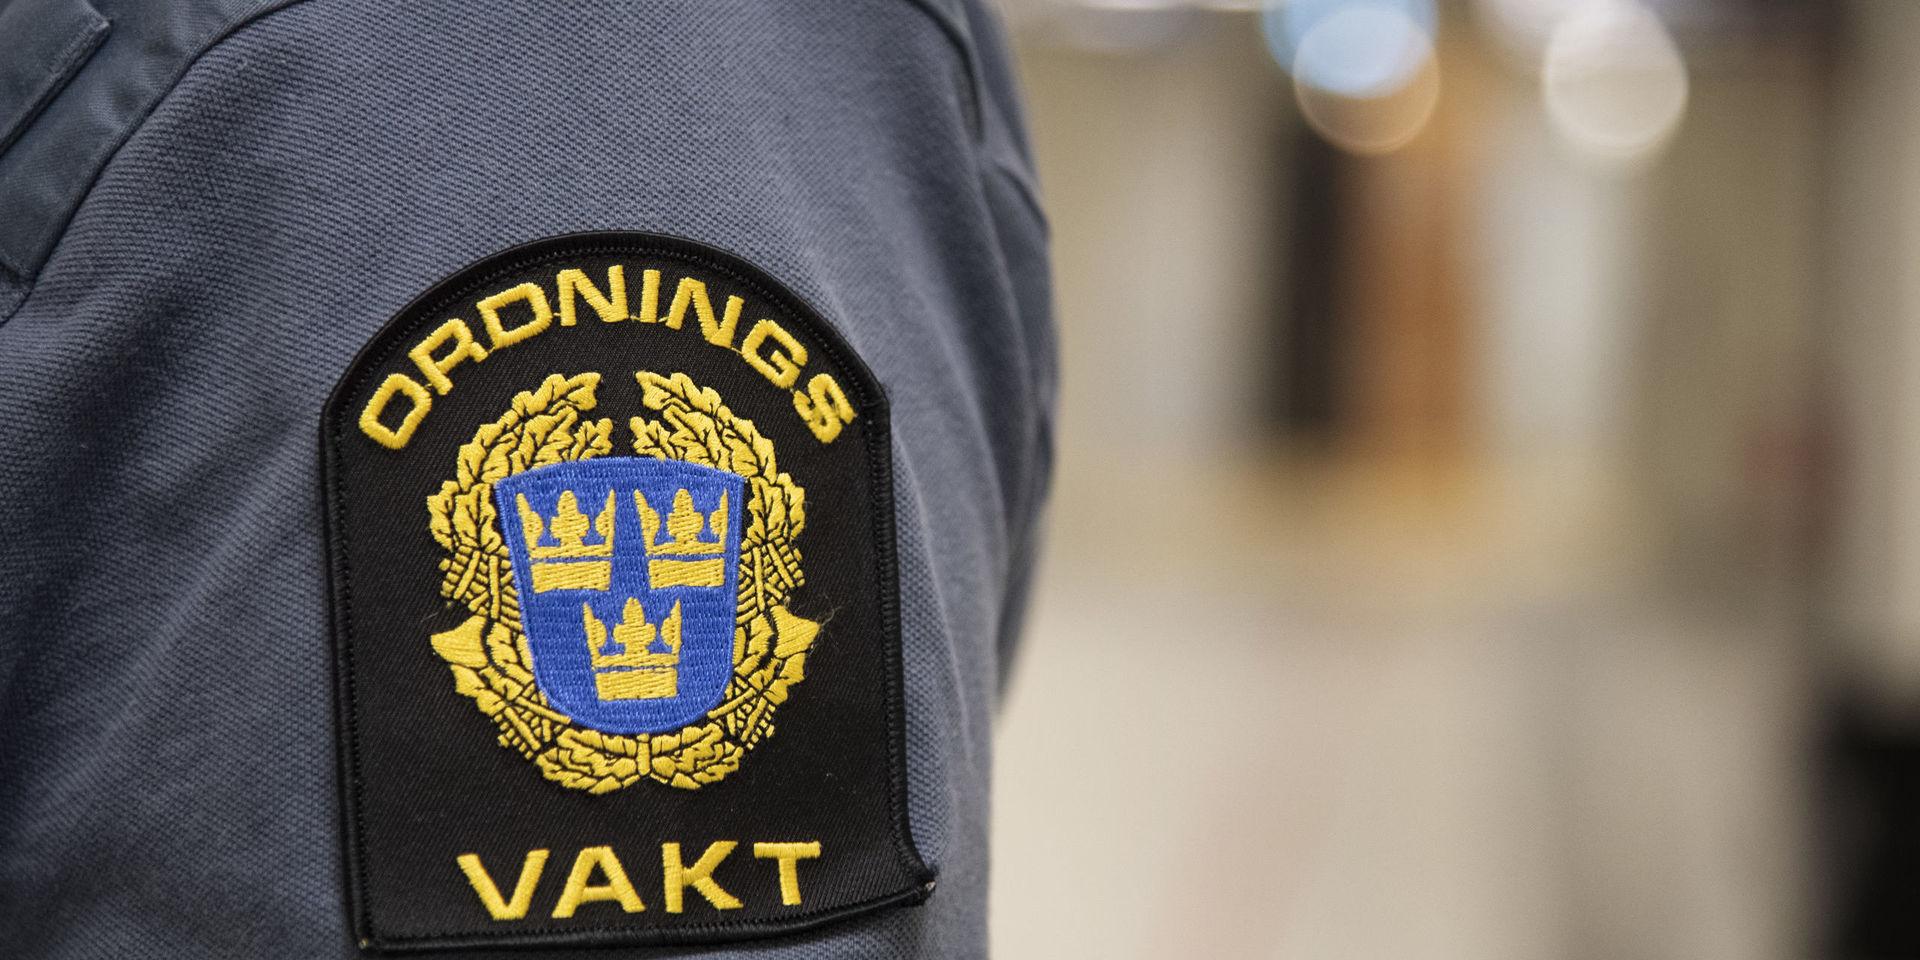 En ordningsvakt i Sotenäs blev slagen och spottad på. Nu döms en man och en kvinna.


